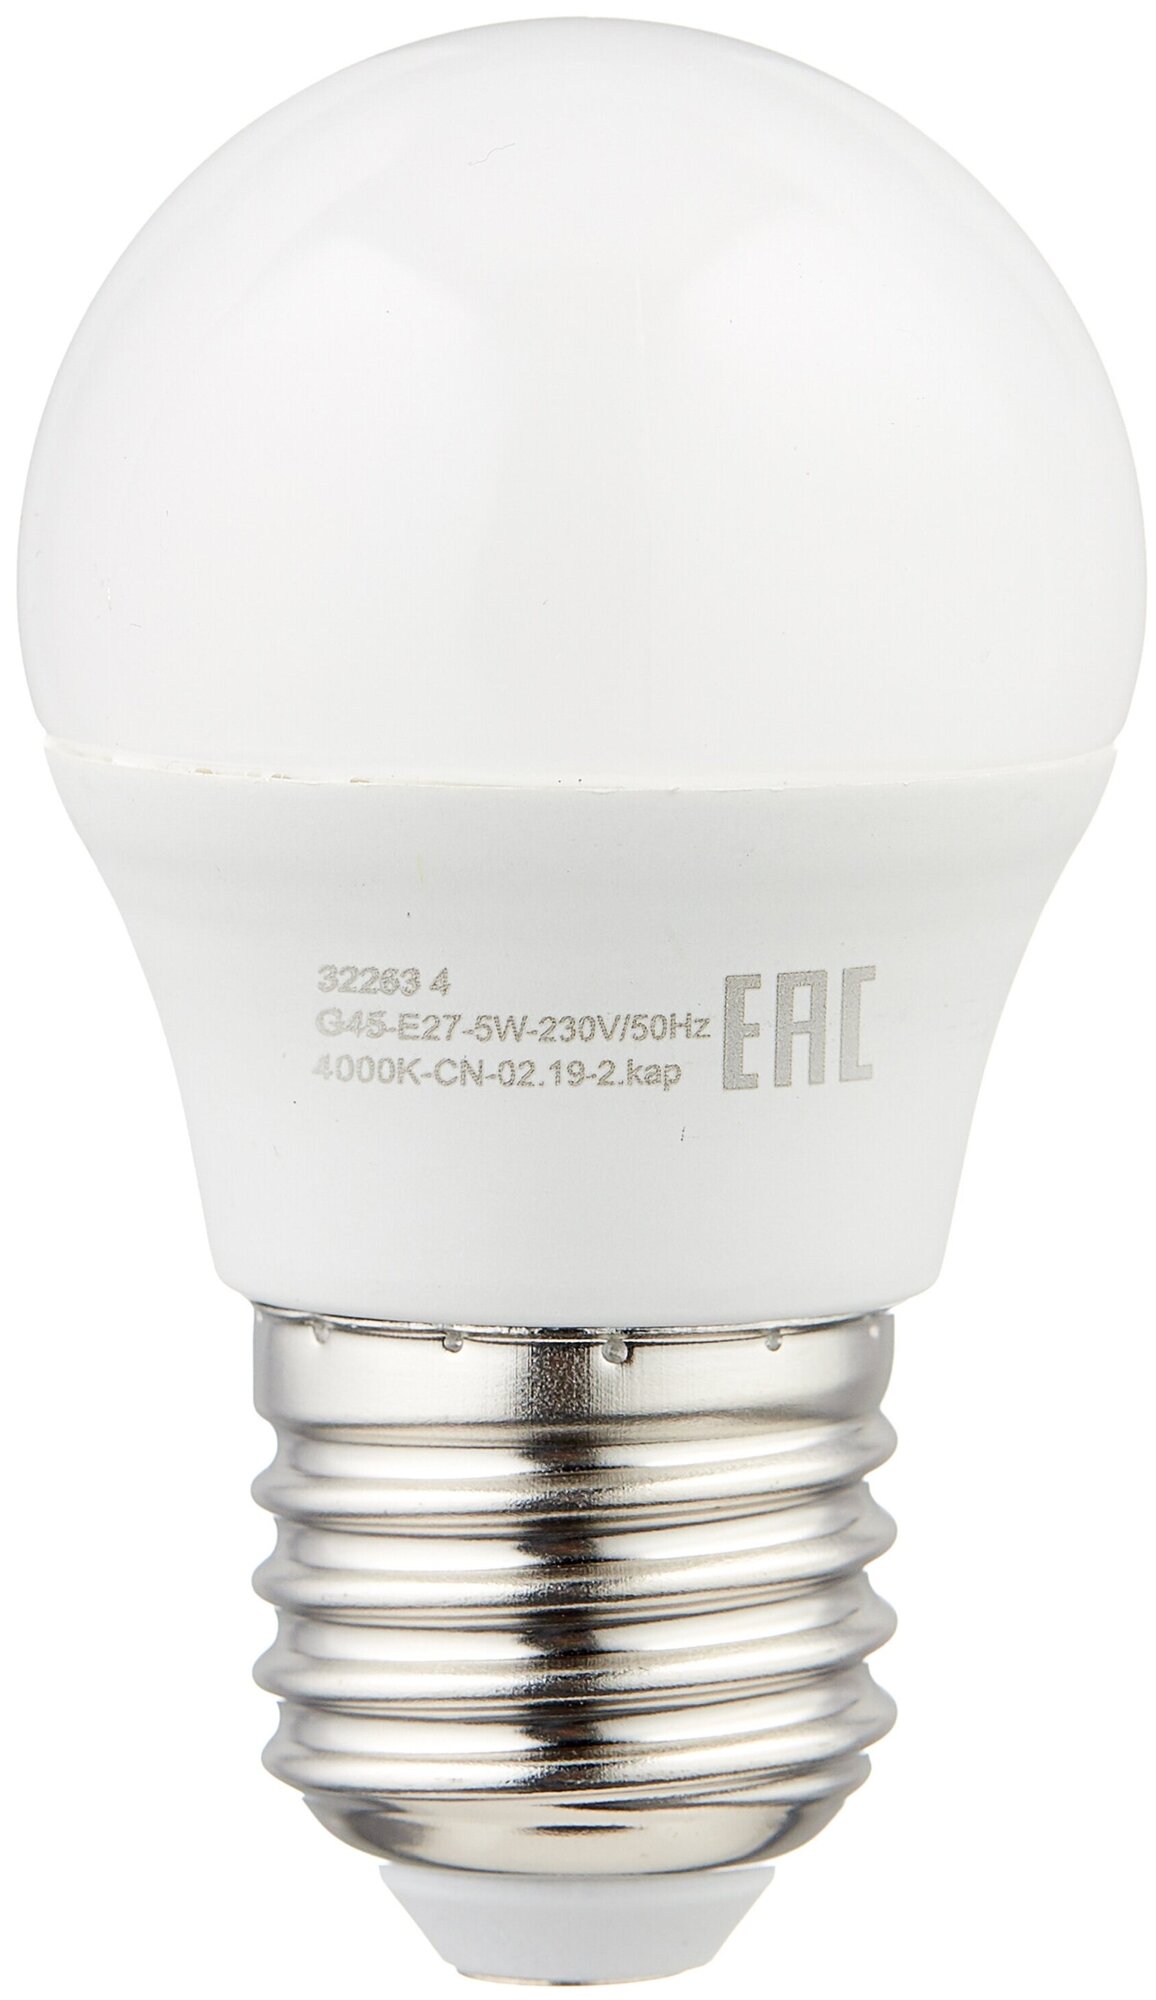 Лампа светодиодная REV 32263 4 E27 G45